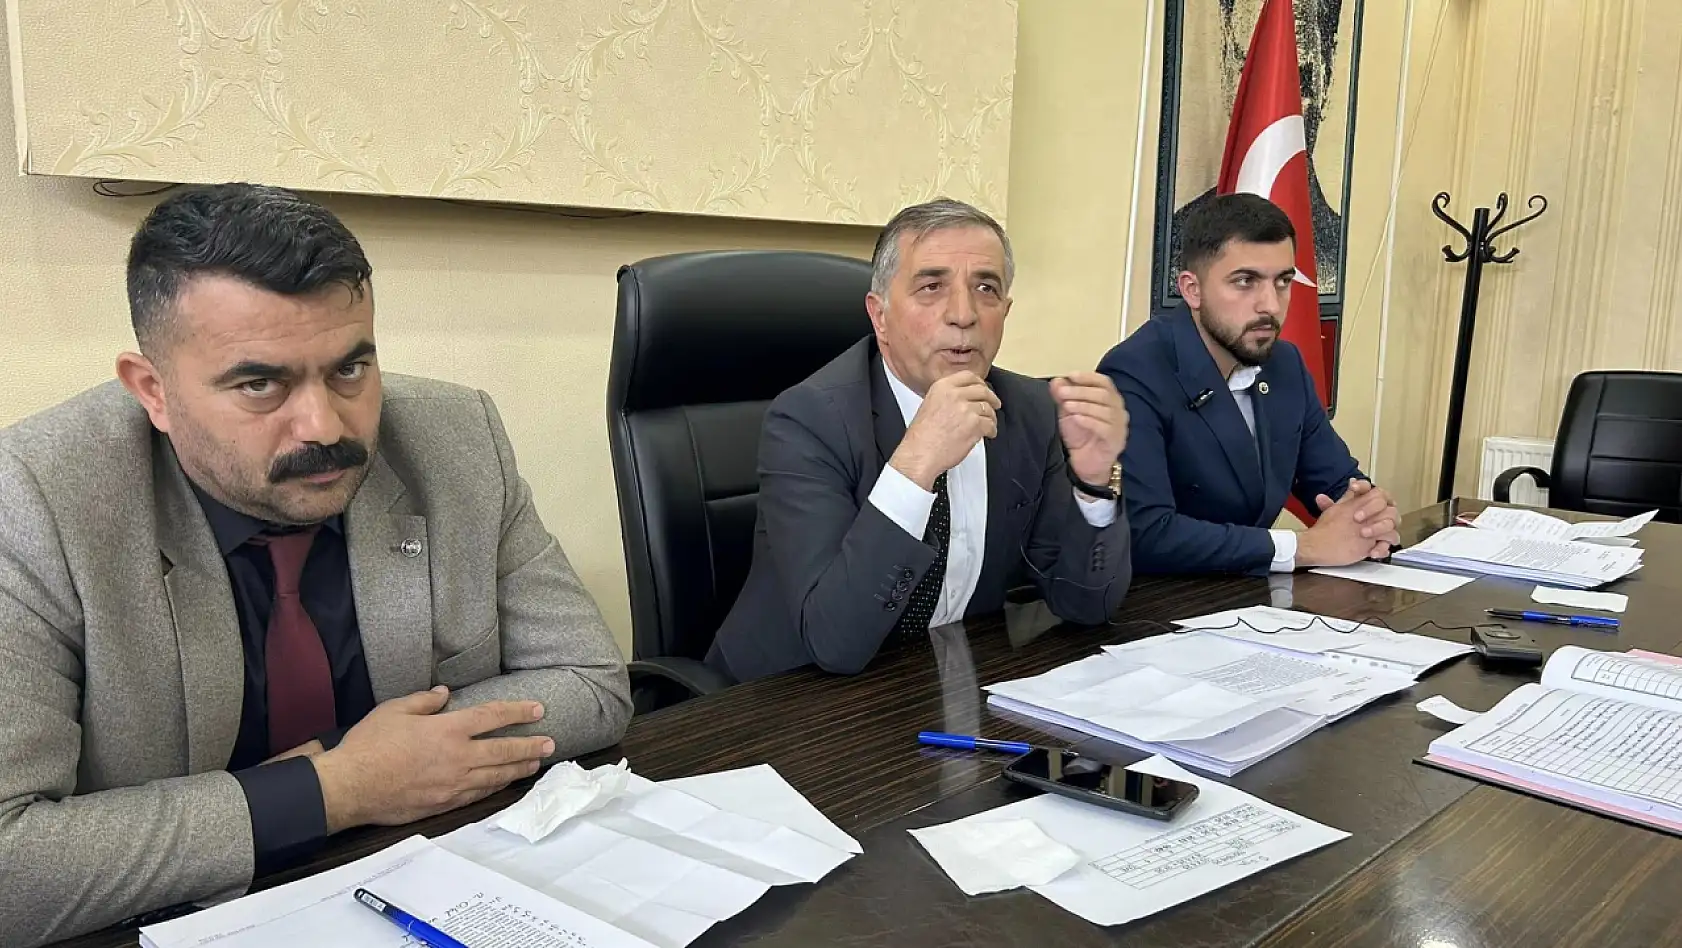 Kayseri'de yeni belediye başkanını çileden çıkaran iddia: Buna tenezzül edeni odama almam!